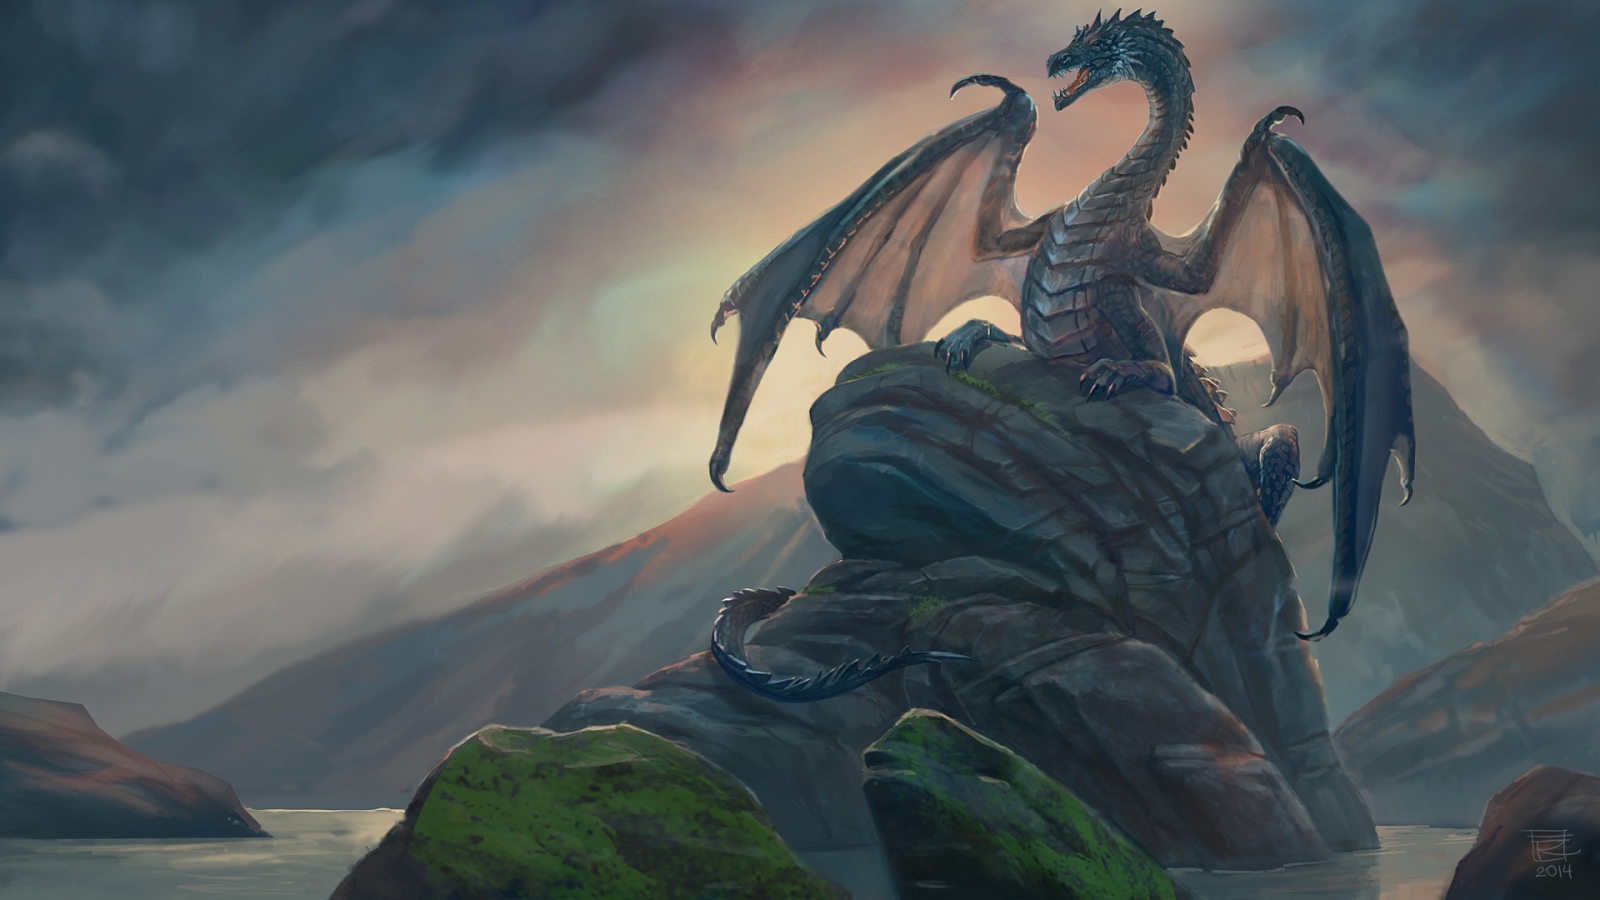 Dragon sitting on a rock